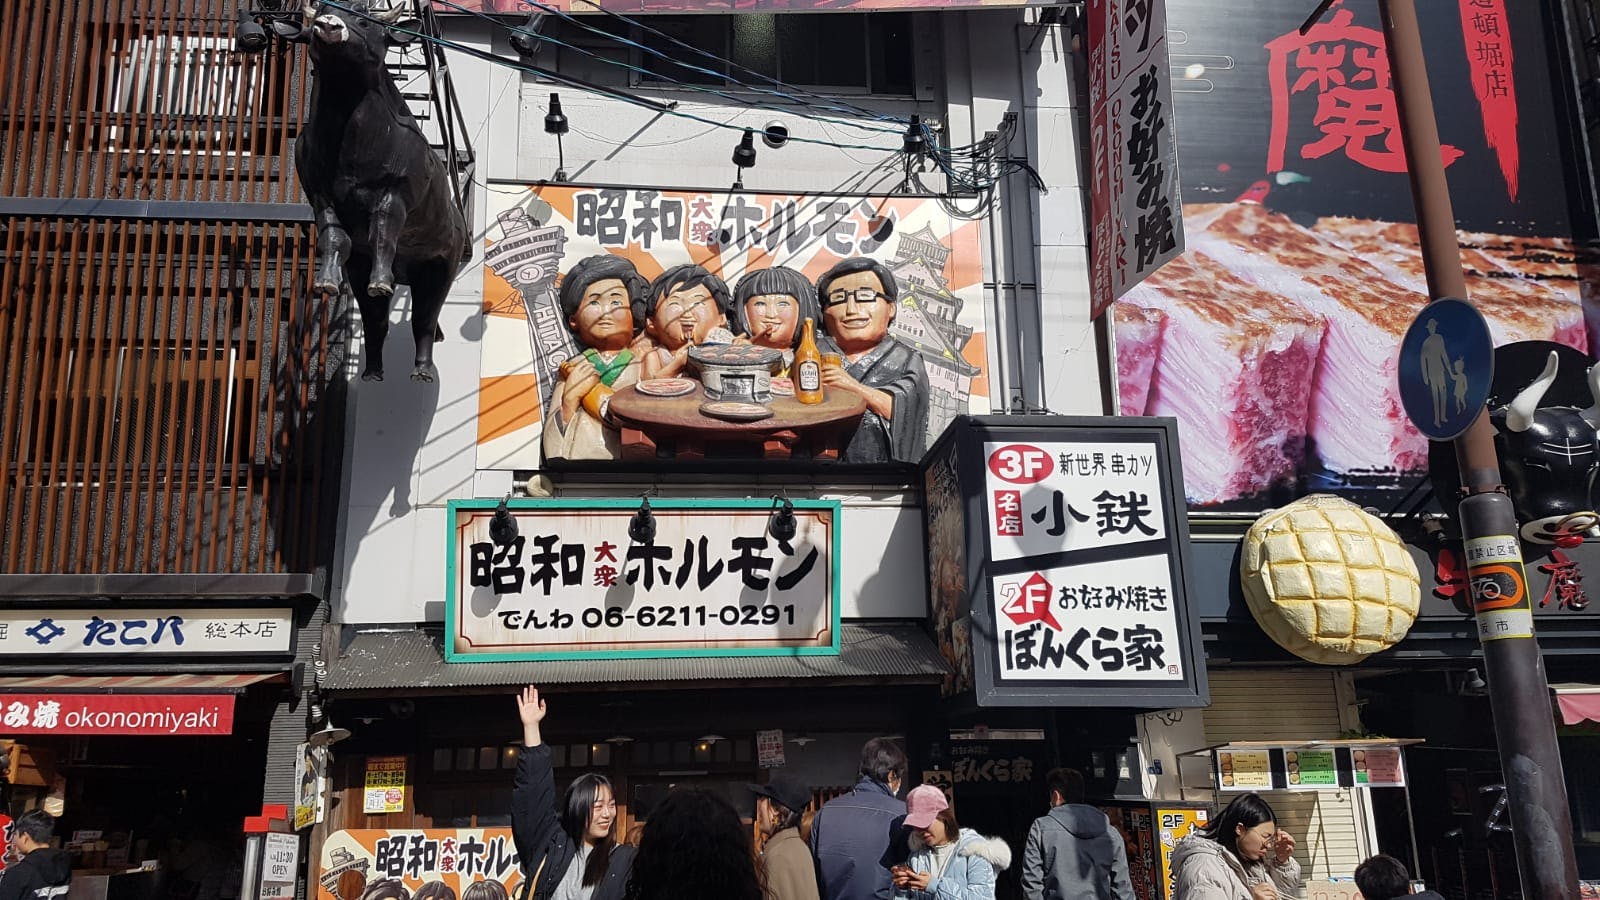 Osaka, beliebtes japanisches Essen, Stadtspiel und Tour